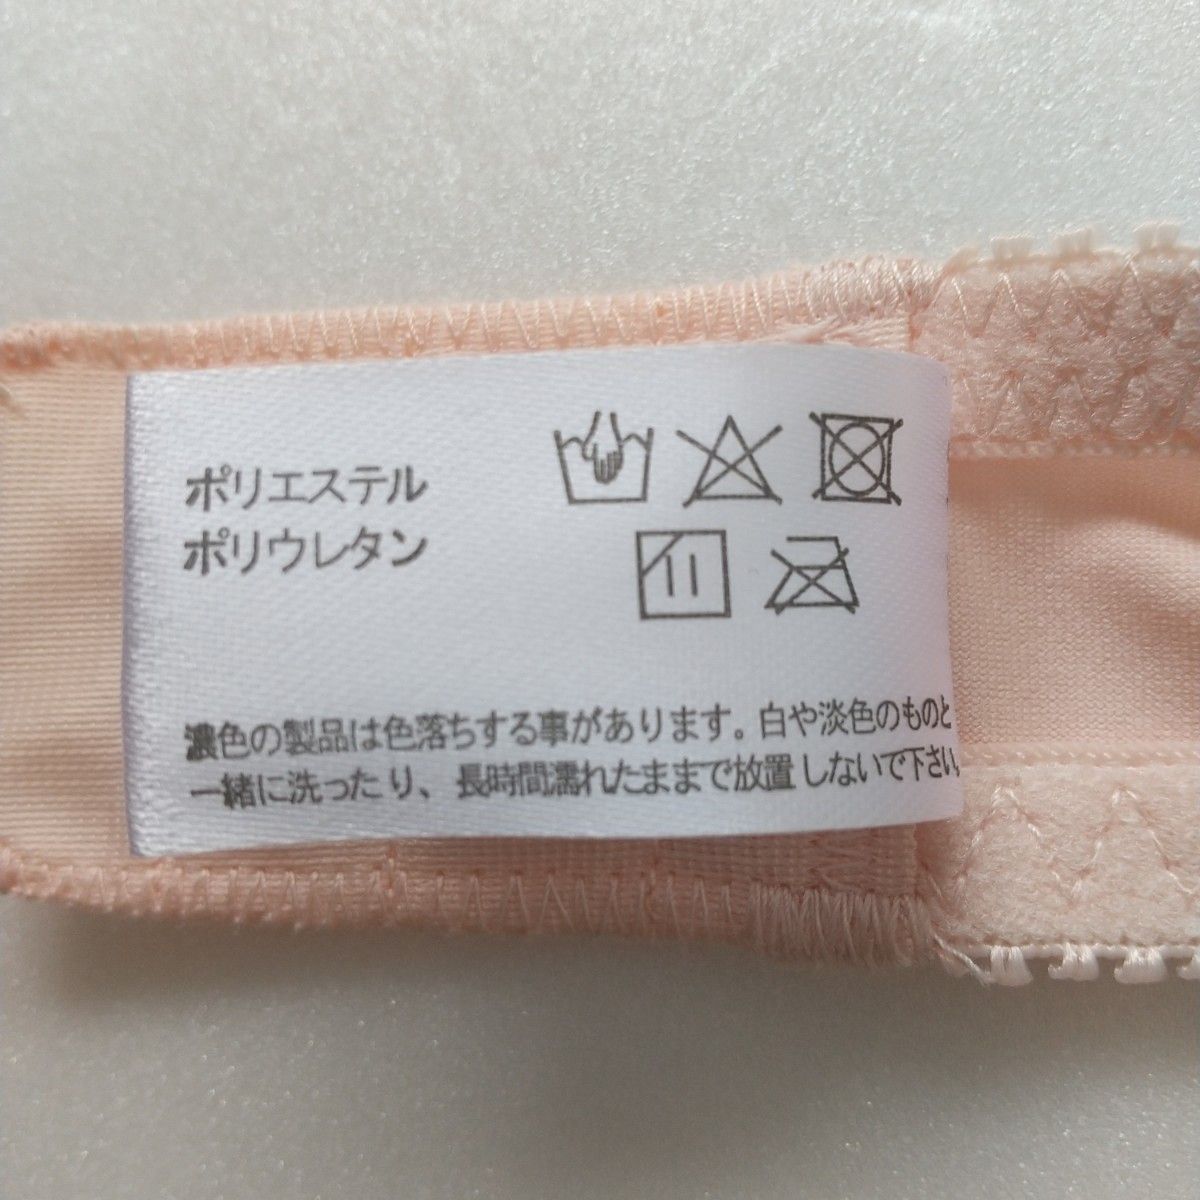 ♪♪【新品未使用】B80  ワイヤー入りブラジャー ピンク 花柄刺繍  レディース ブラ